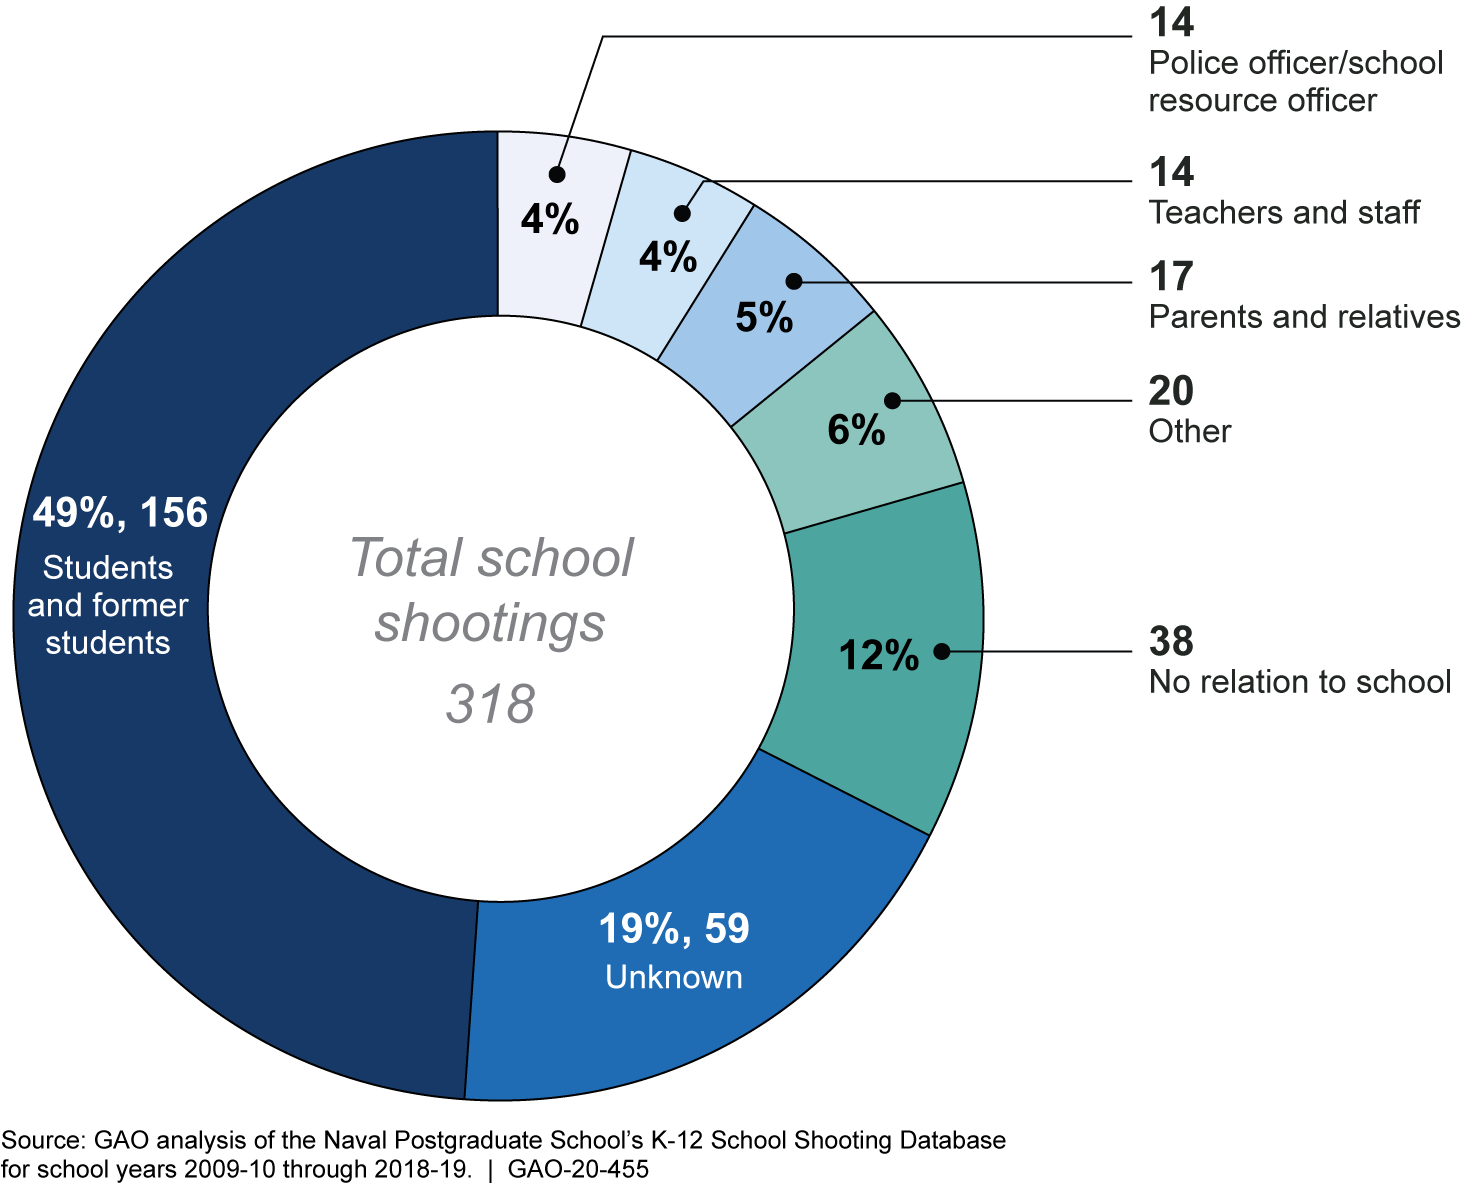 K-12 School Shootings by Shooter, School Years 2009-10 through 2018-19